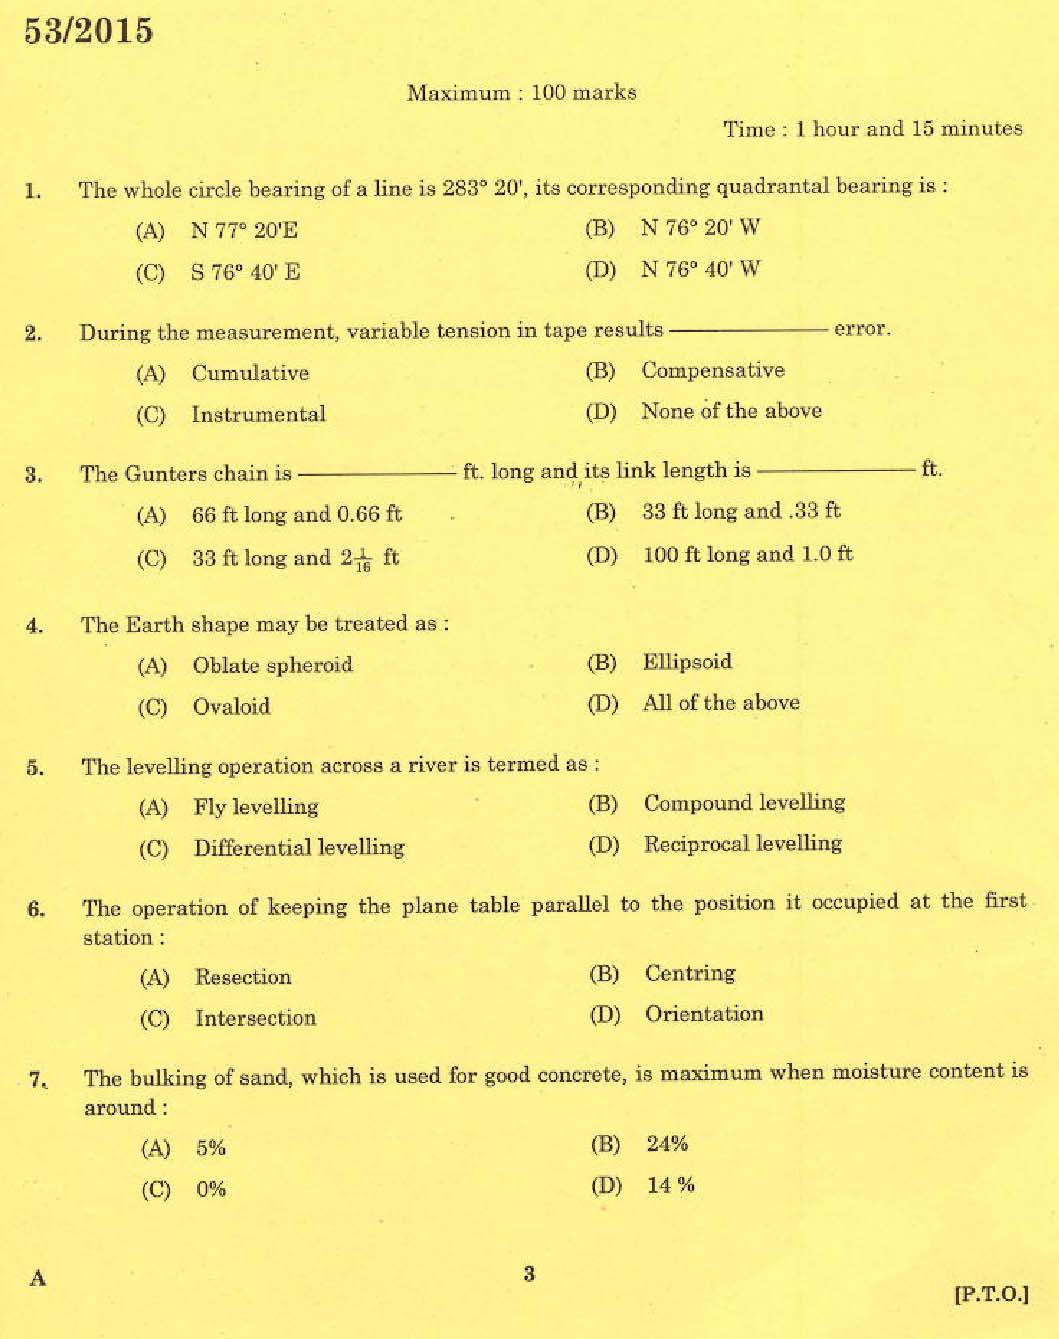 KPSC Tradesman Survey Exam 2015 Code 532015 1